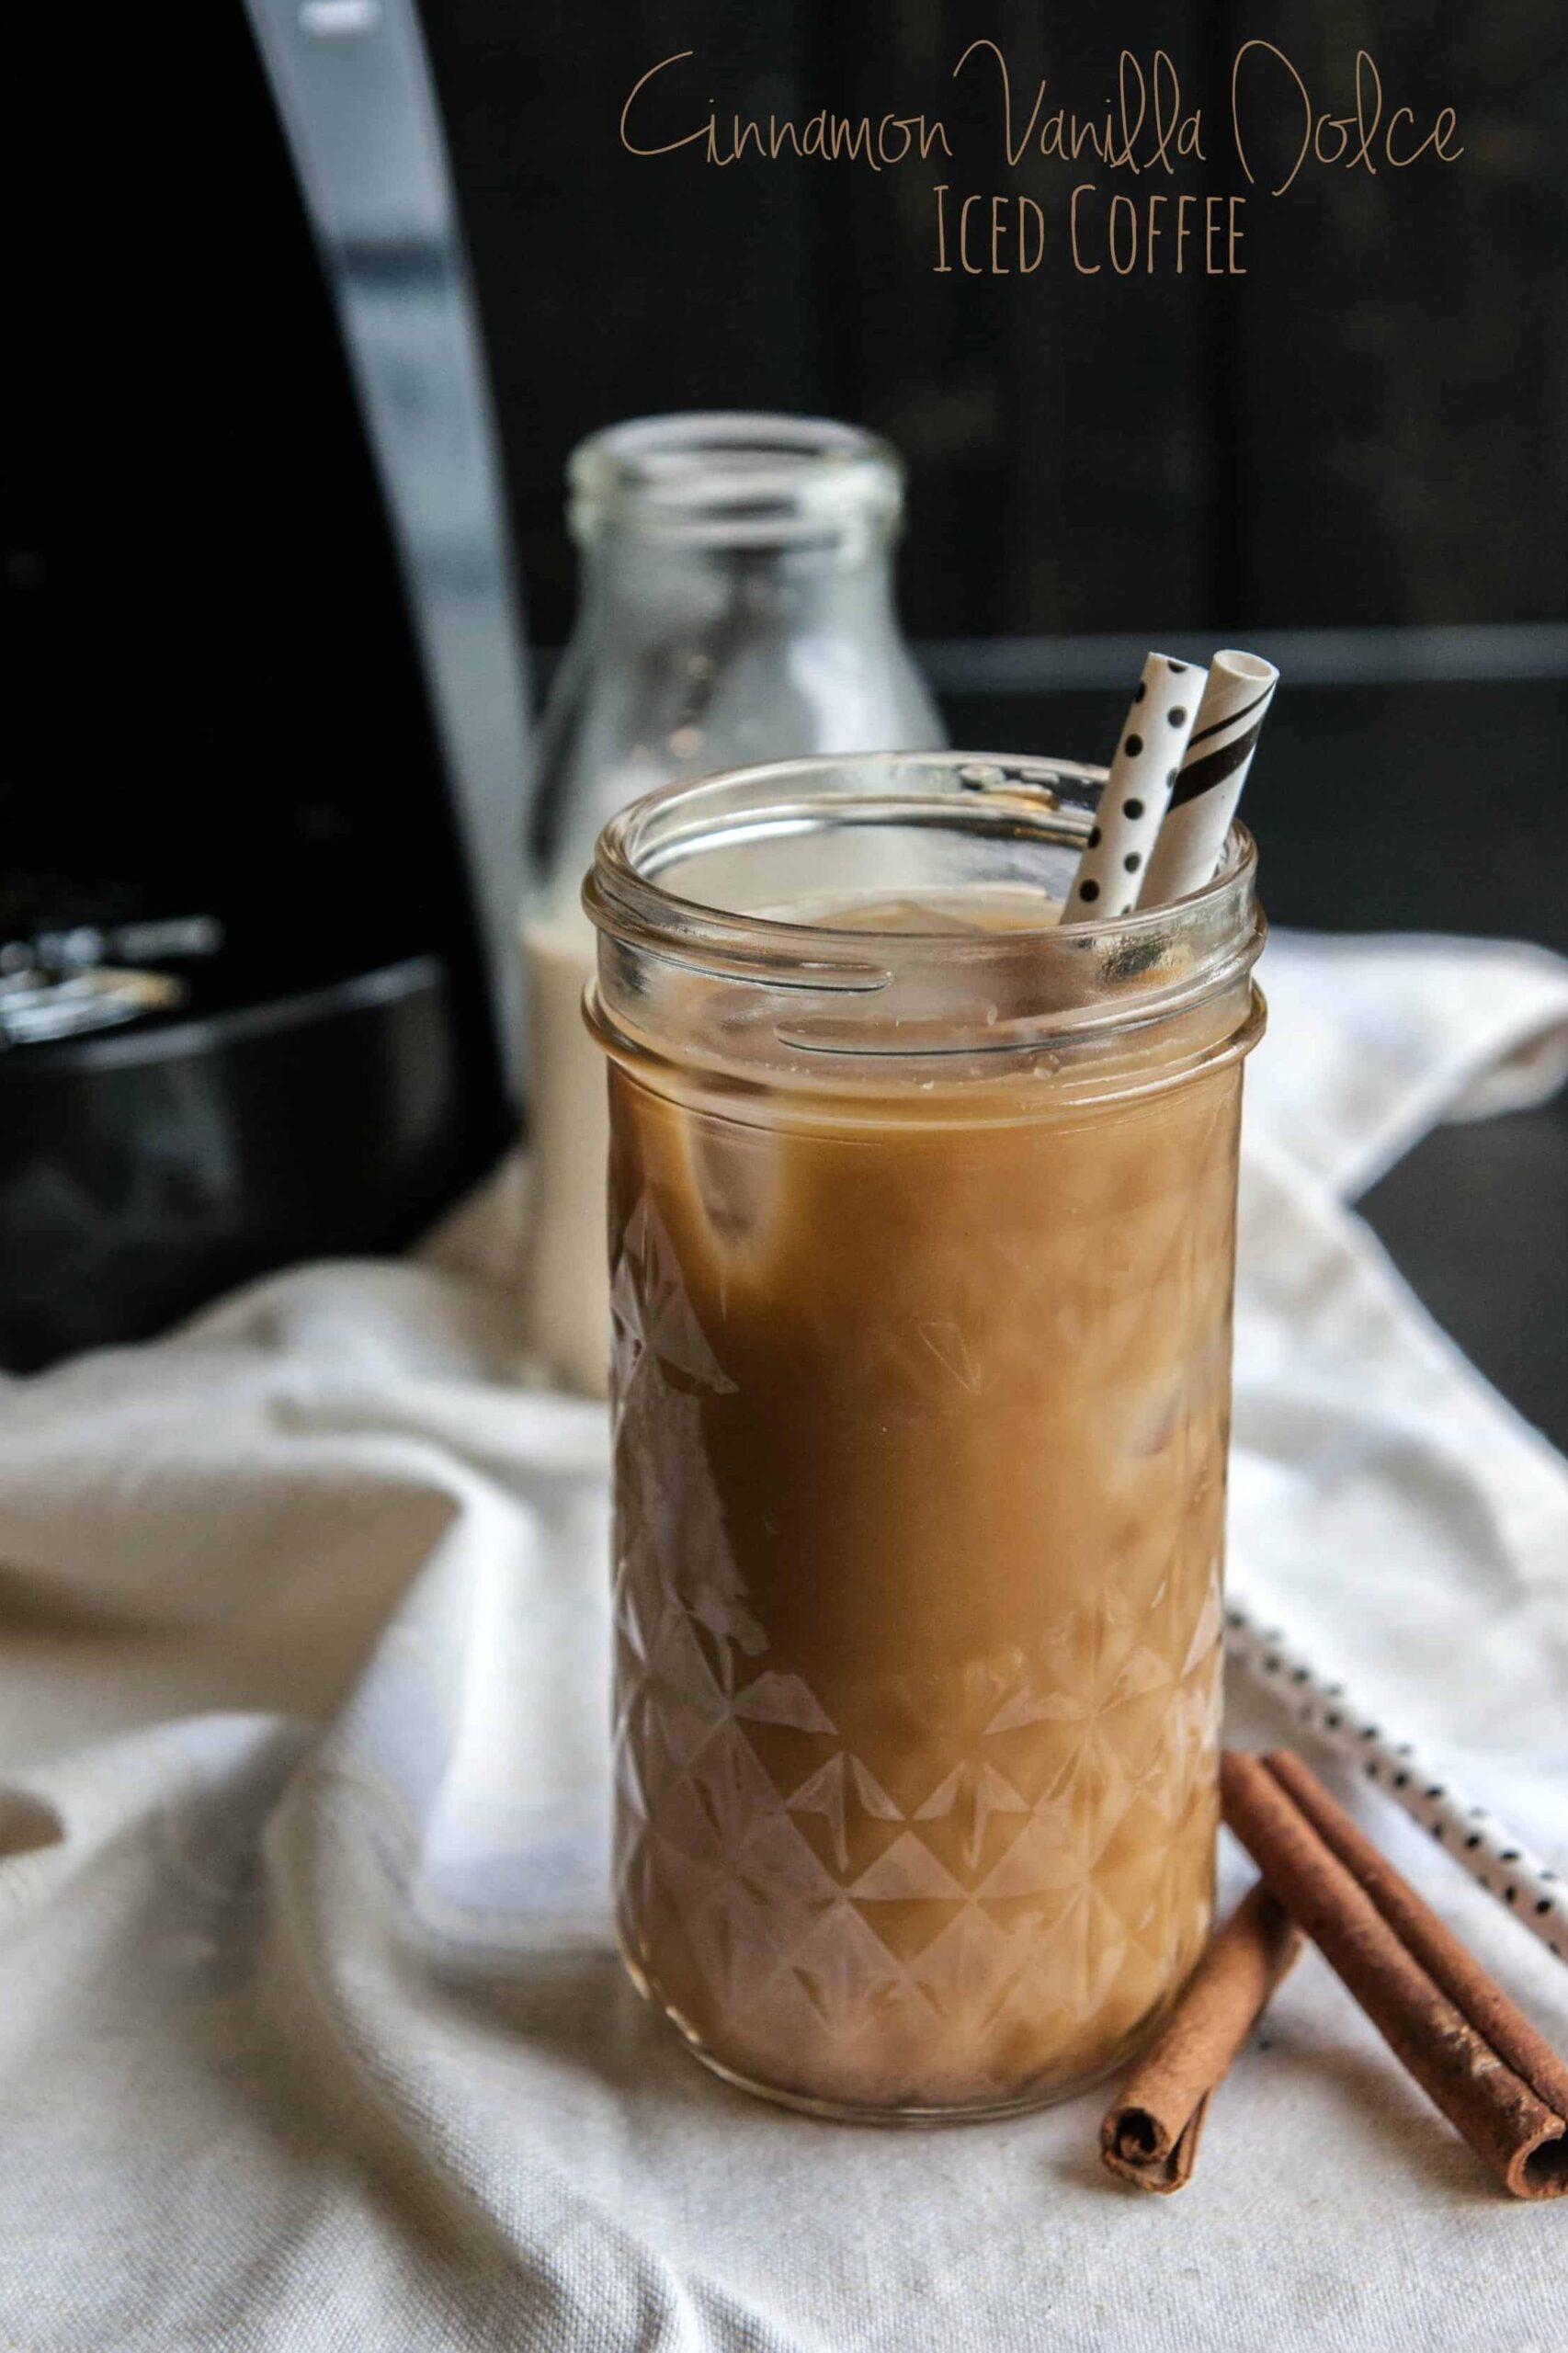 Sure, here are 11 unique photo captions for the Cinnamon-Vanilla Coffee recipe: